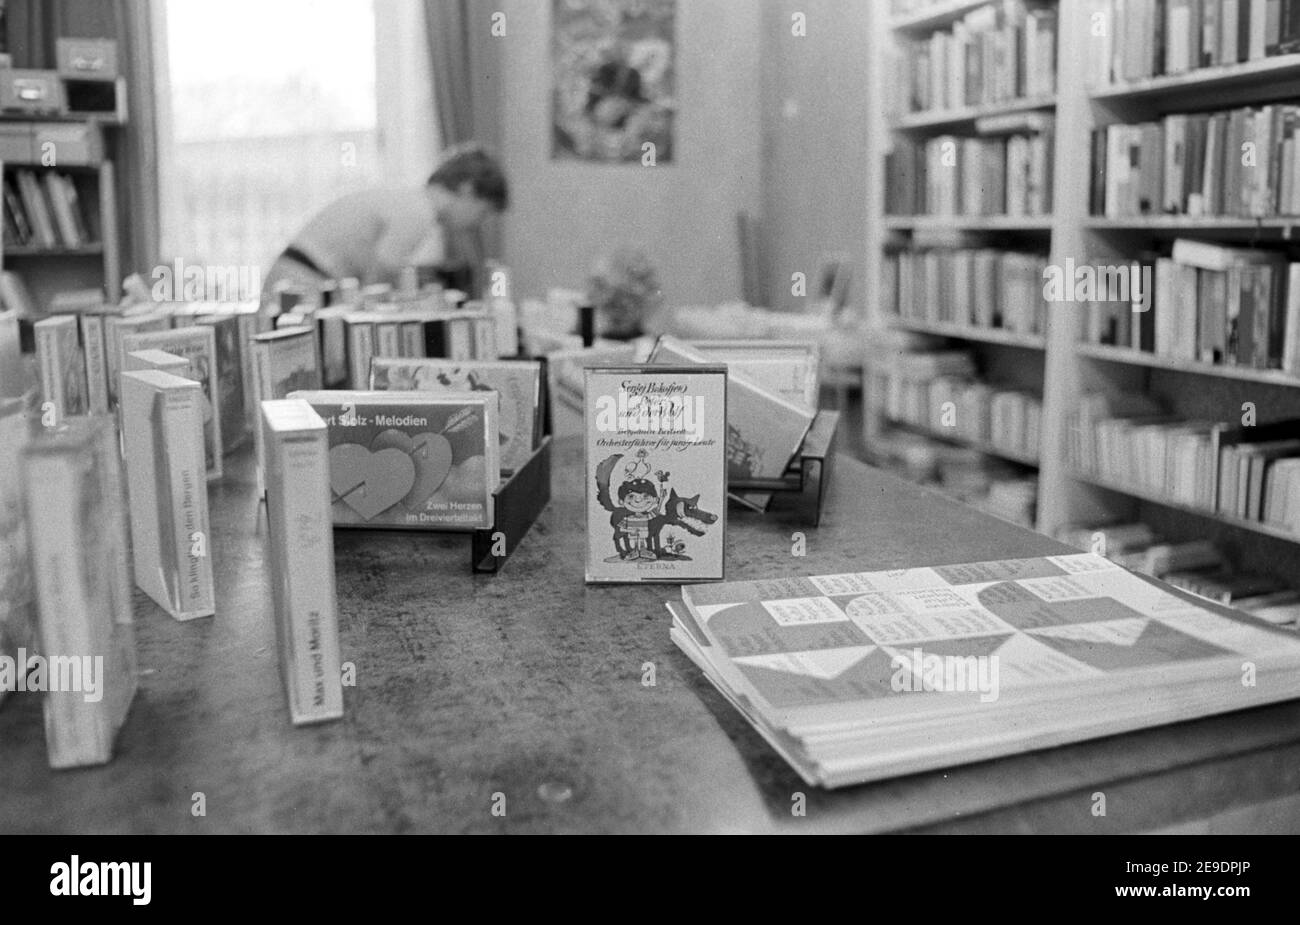 15 settembre 1982, Sassonia, Zschortau: Radio play cassette - nella biblioteca comunale Zschortau sono tra gli scaffali del libro nell'autunno di 1982 bambini e lettori adulti. Data esatta della registrazione non nota. Foto: Volkmar Heinz/dpa-Zentralbild/ZB Foto Stock